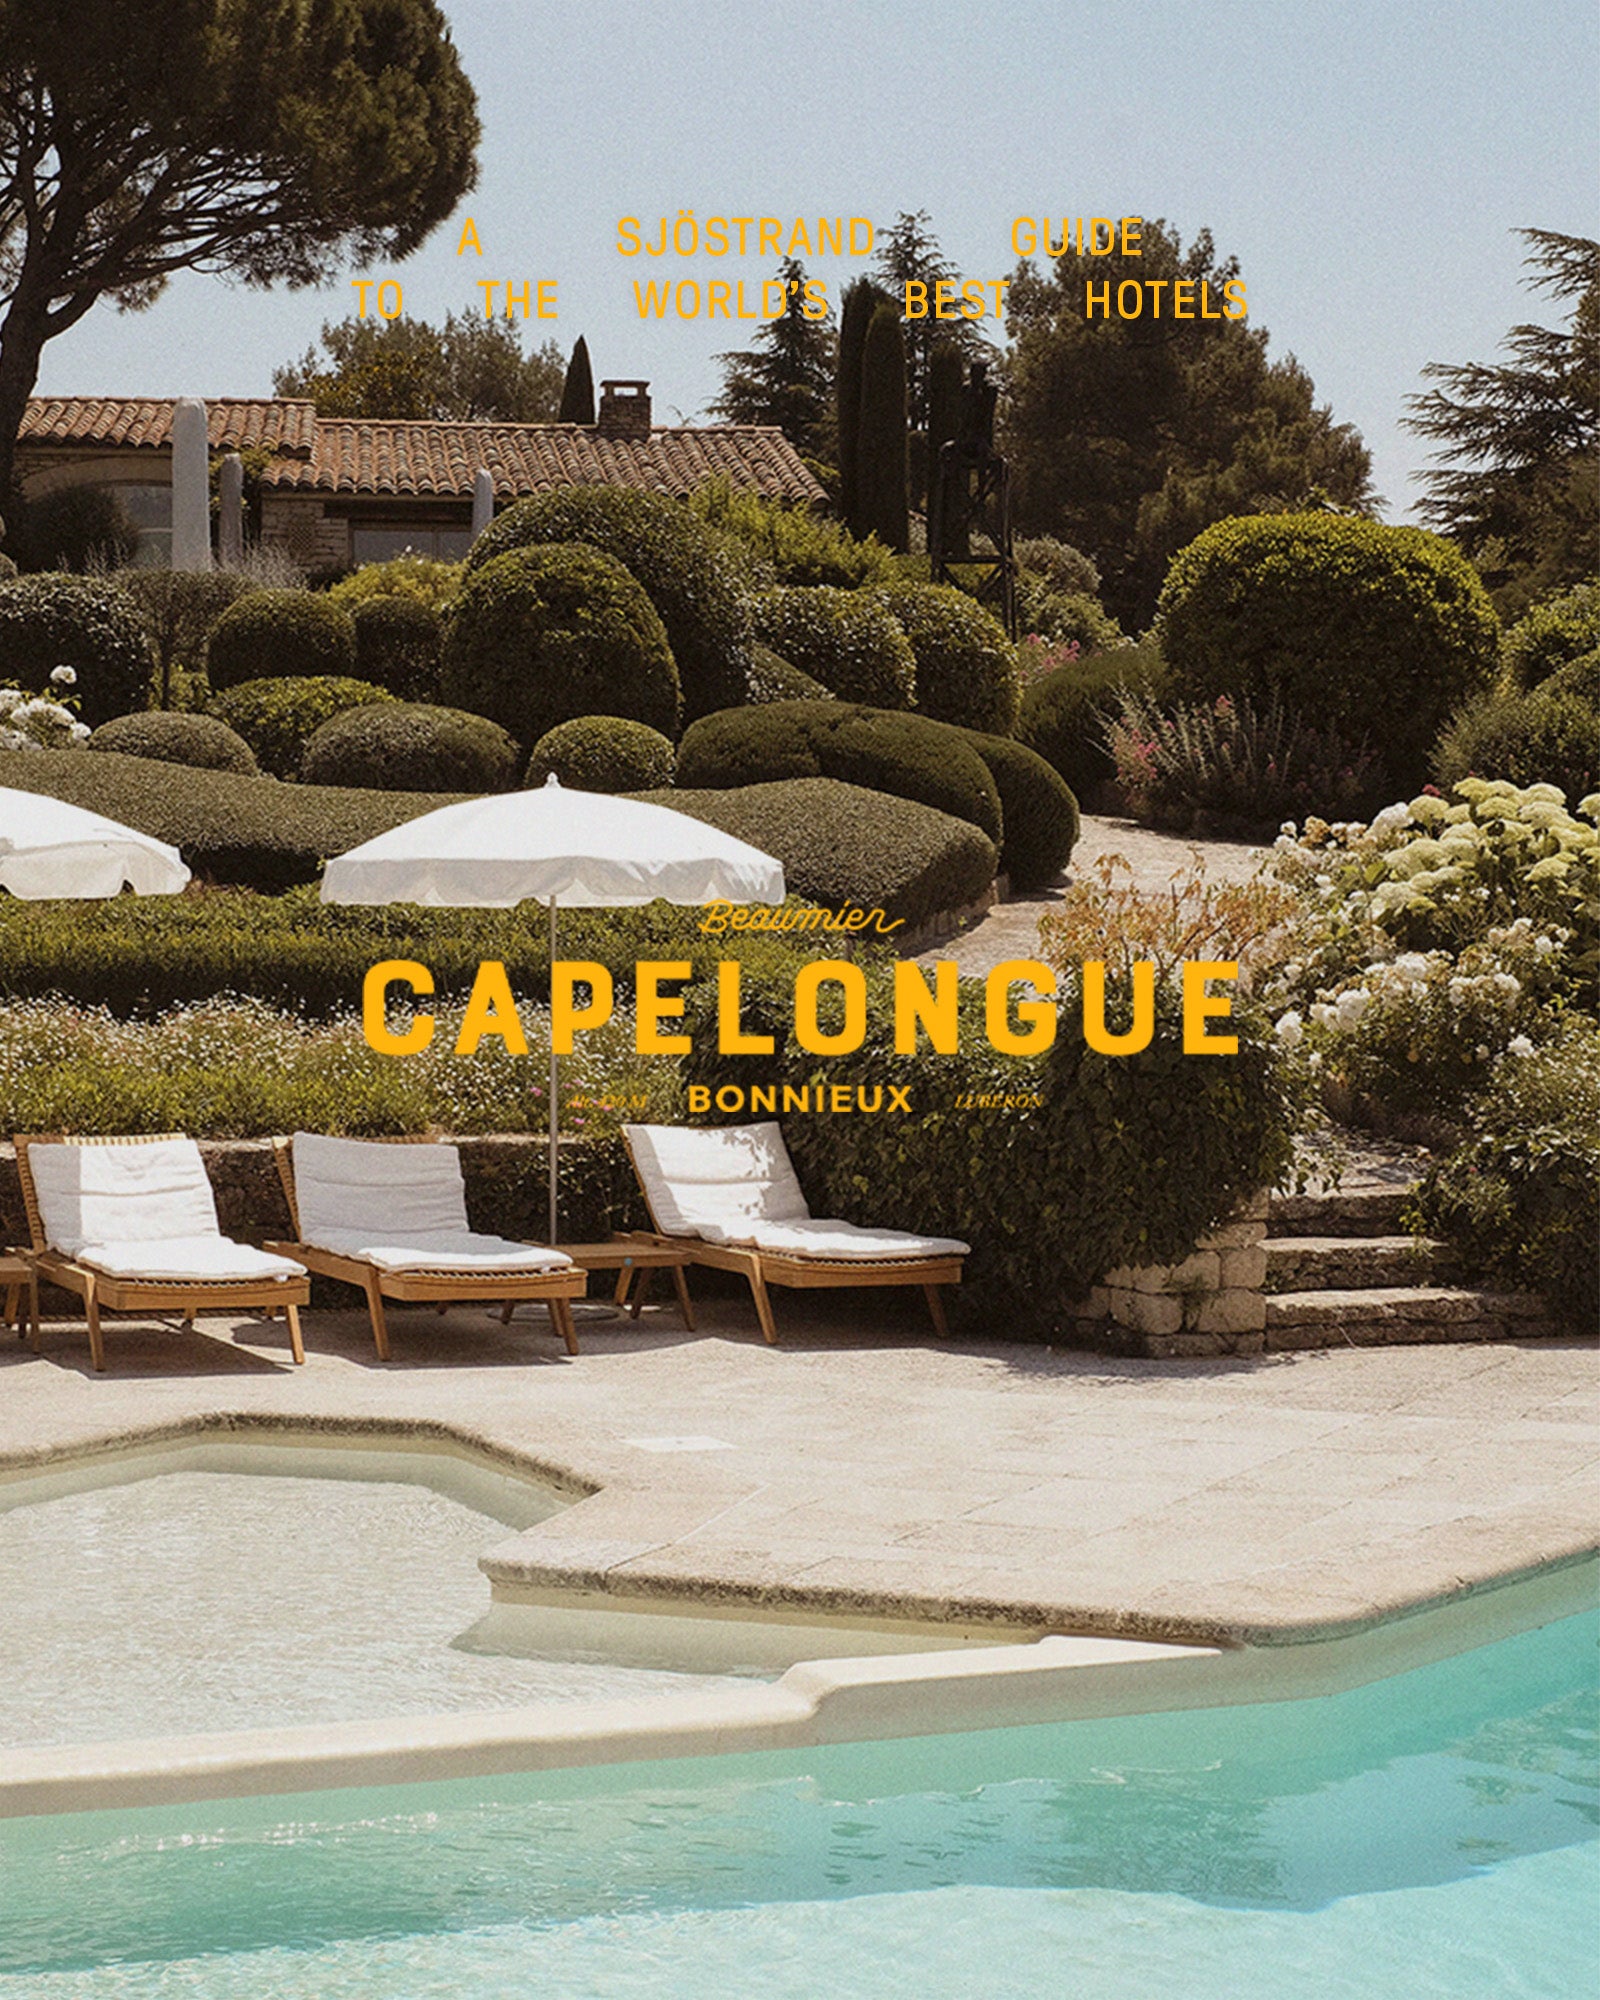 Ein Sjöstrand Guide zu den besten Hotels der Welt – Capelongue in der Provencesplit-banner image